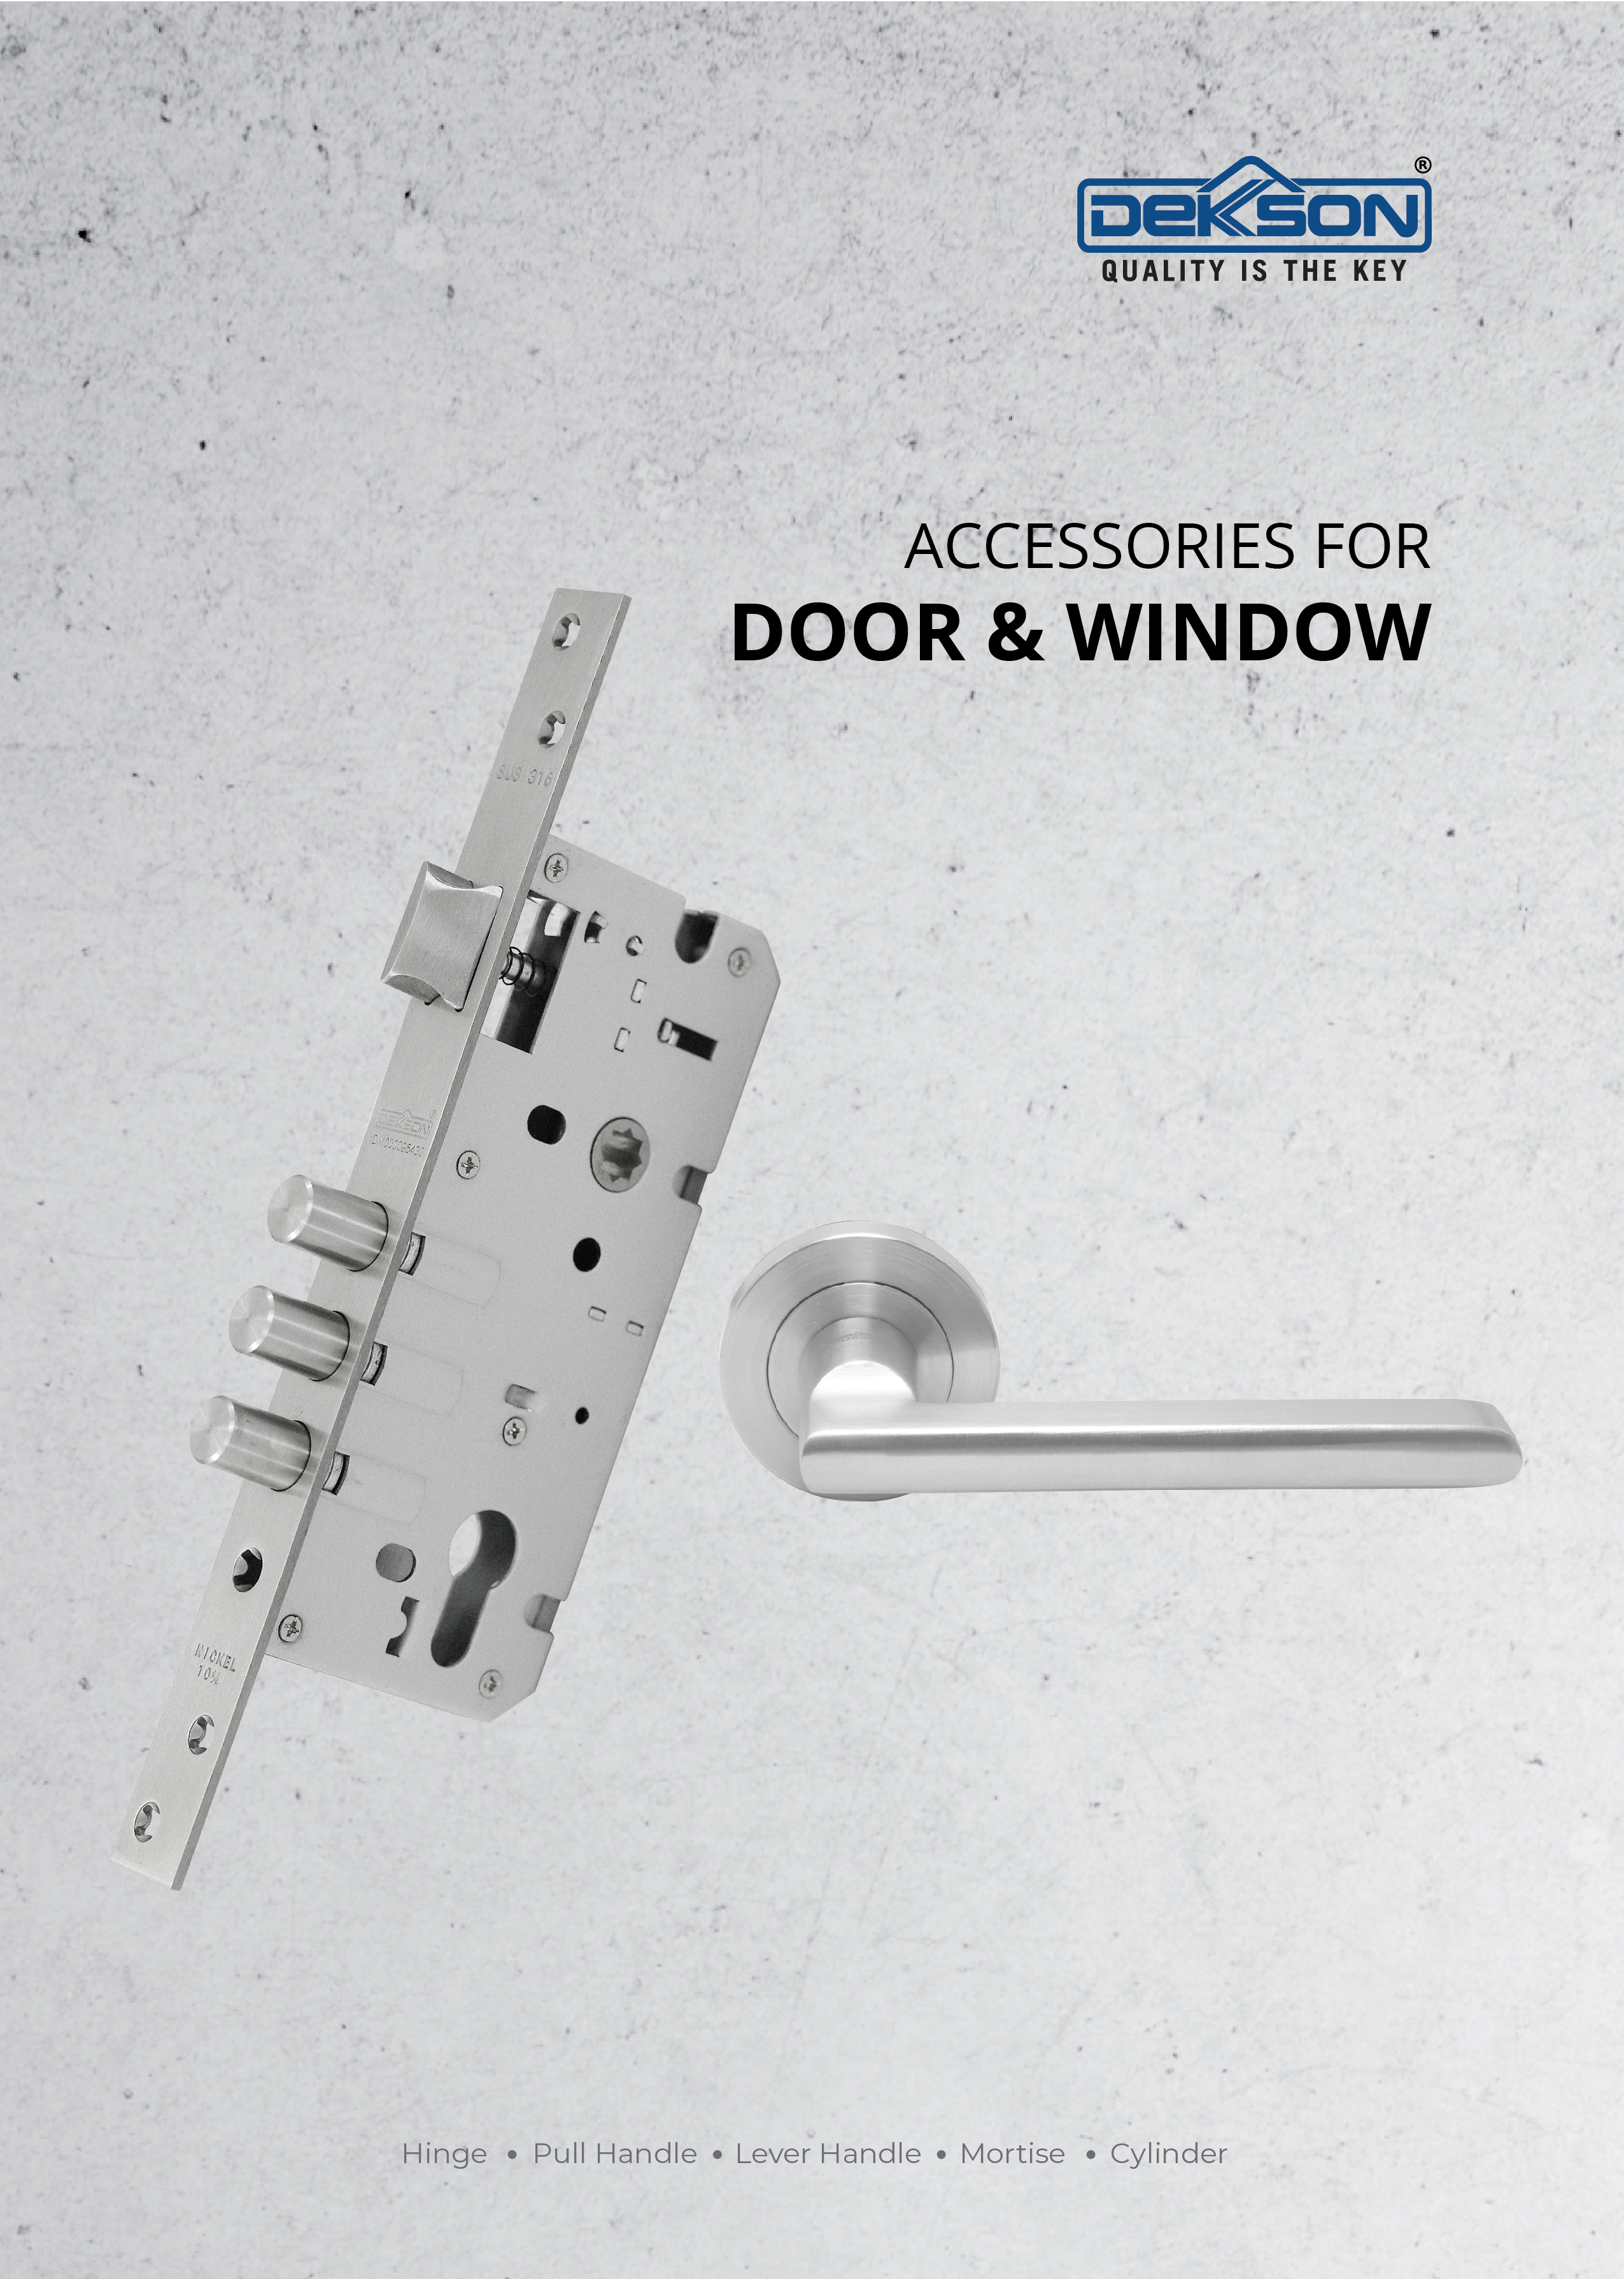 Accessories for Door & Window